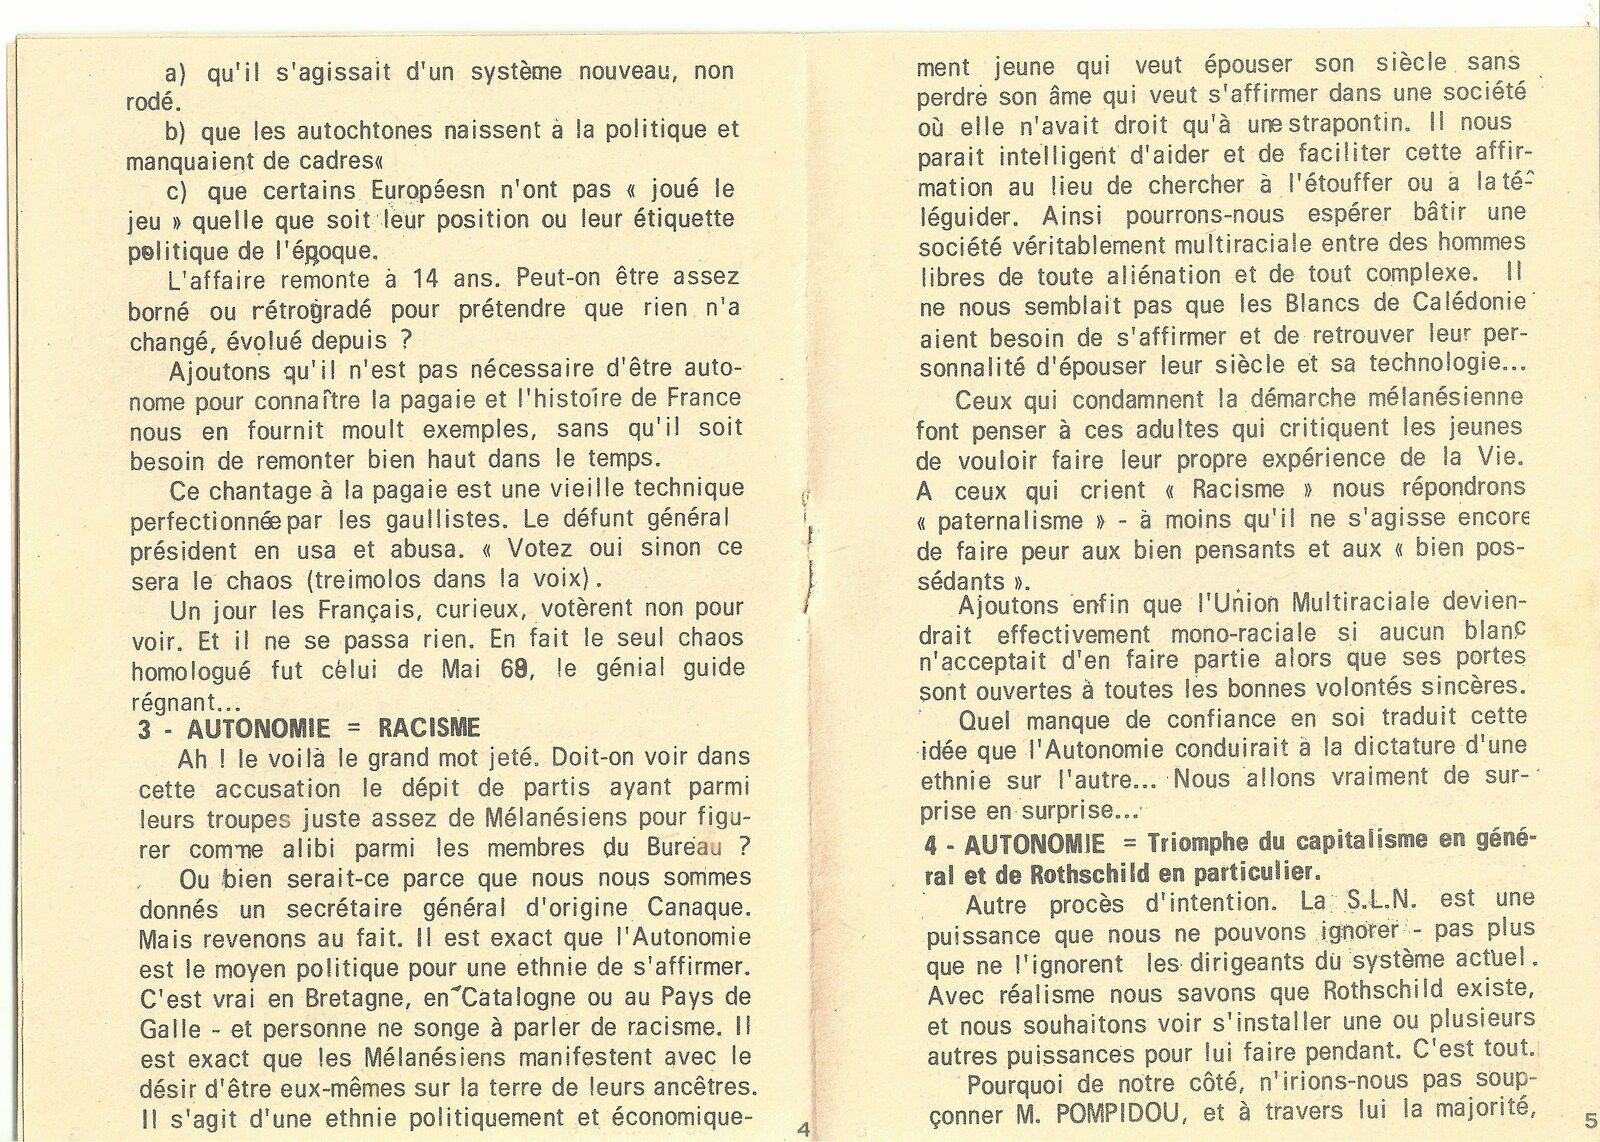 Opuscules électoraux de l'Union Multiraciale de Nouvelle-Calédonie (1972)